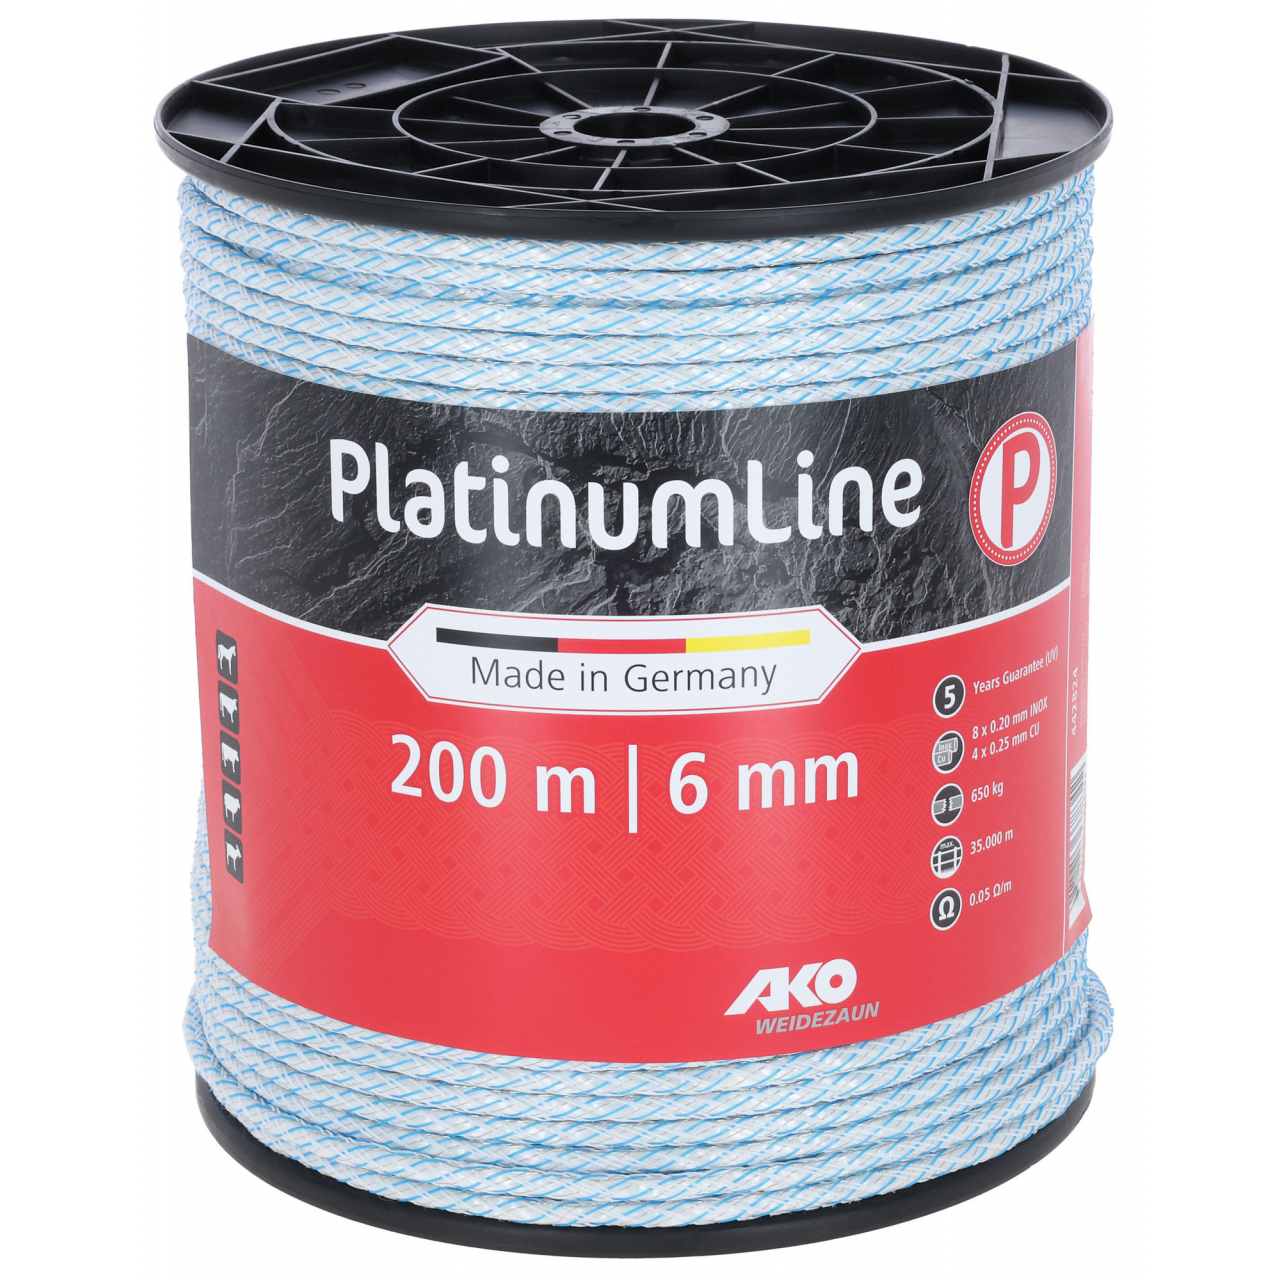 PlatinumLine villanypásztor vezeték